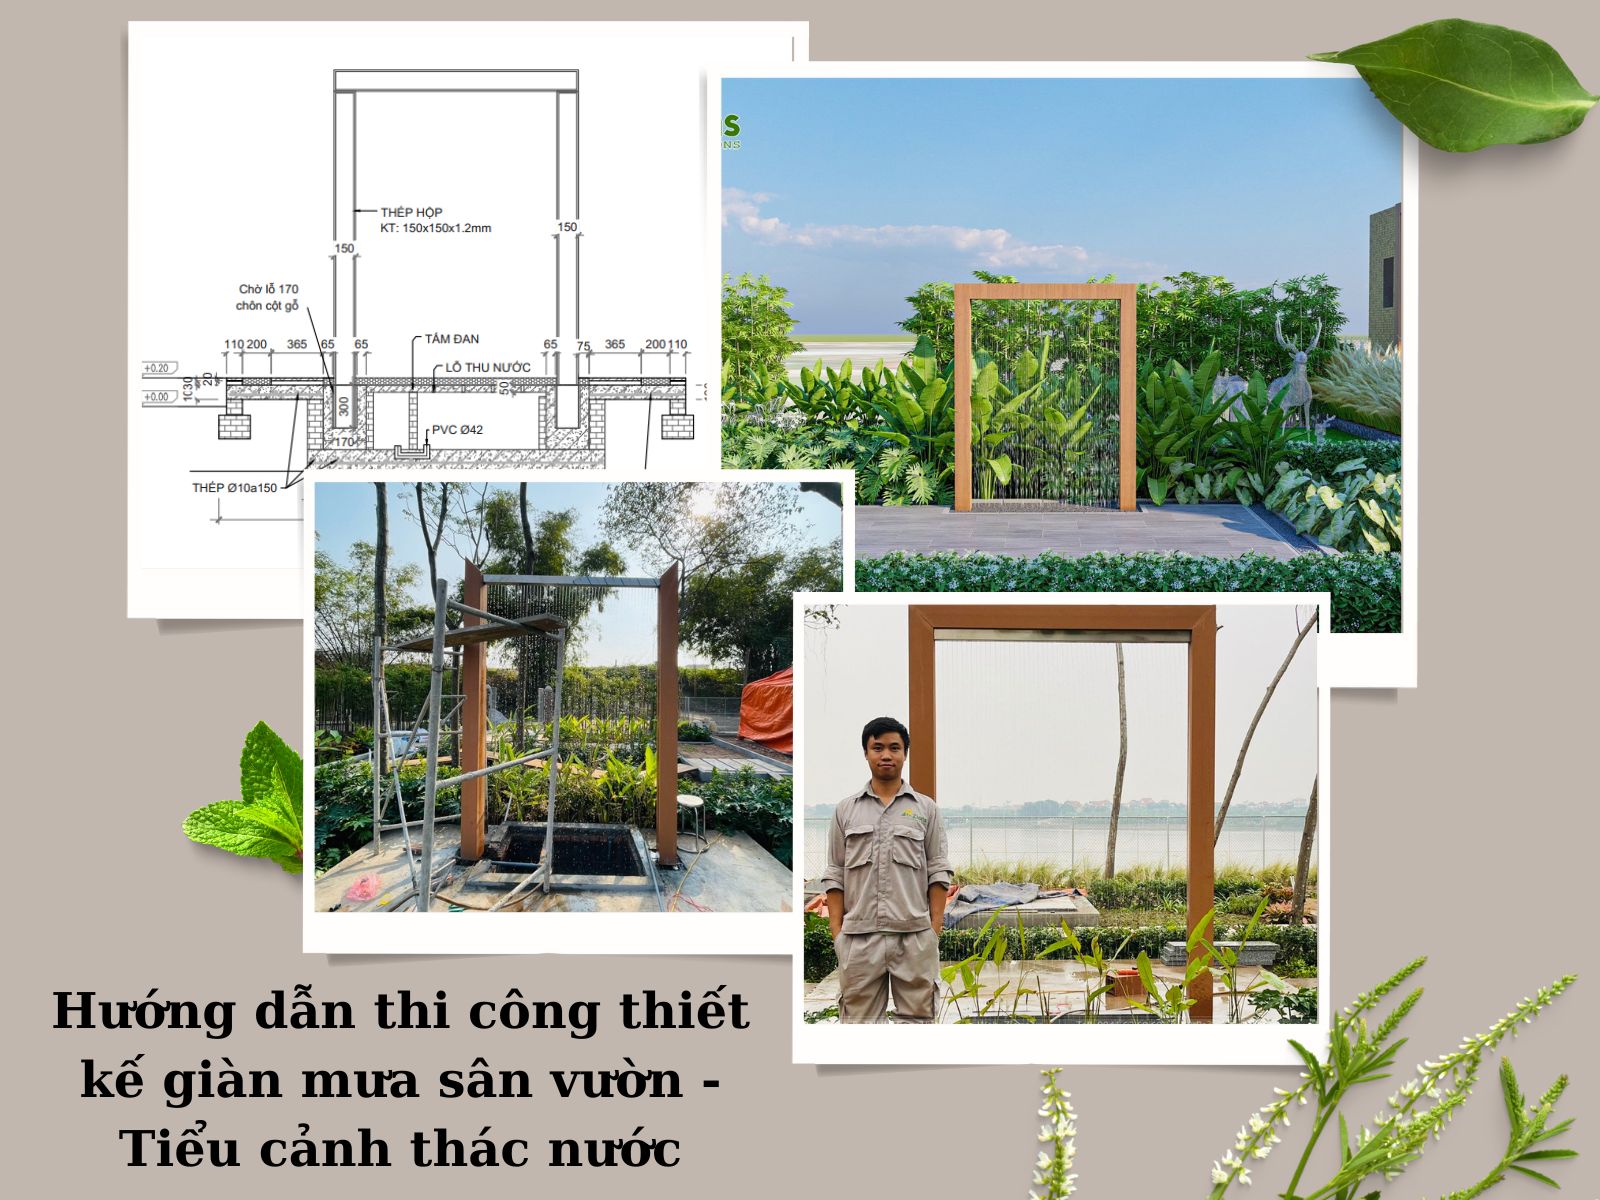 Hướng dẫn thi công thiết kế giàn mưa sân vườn - Tiểu cảnh thác nước